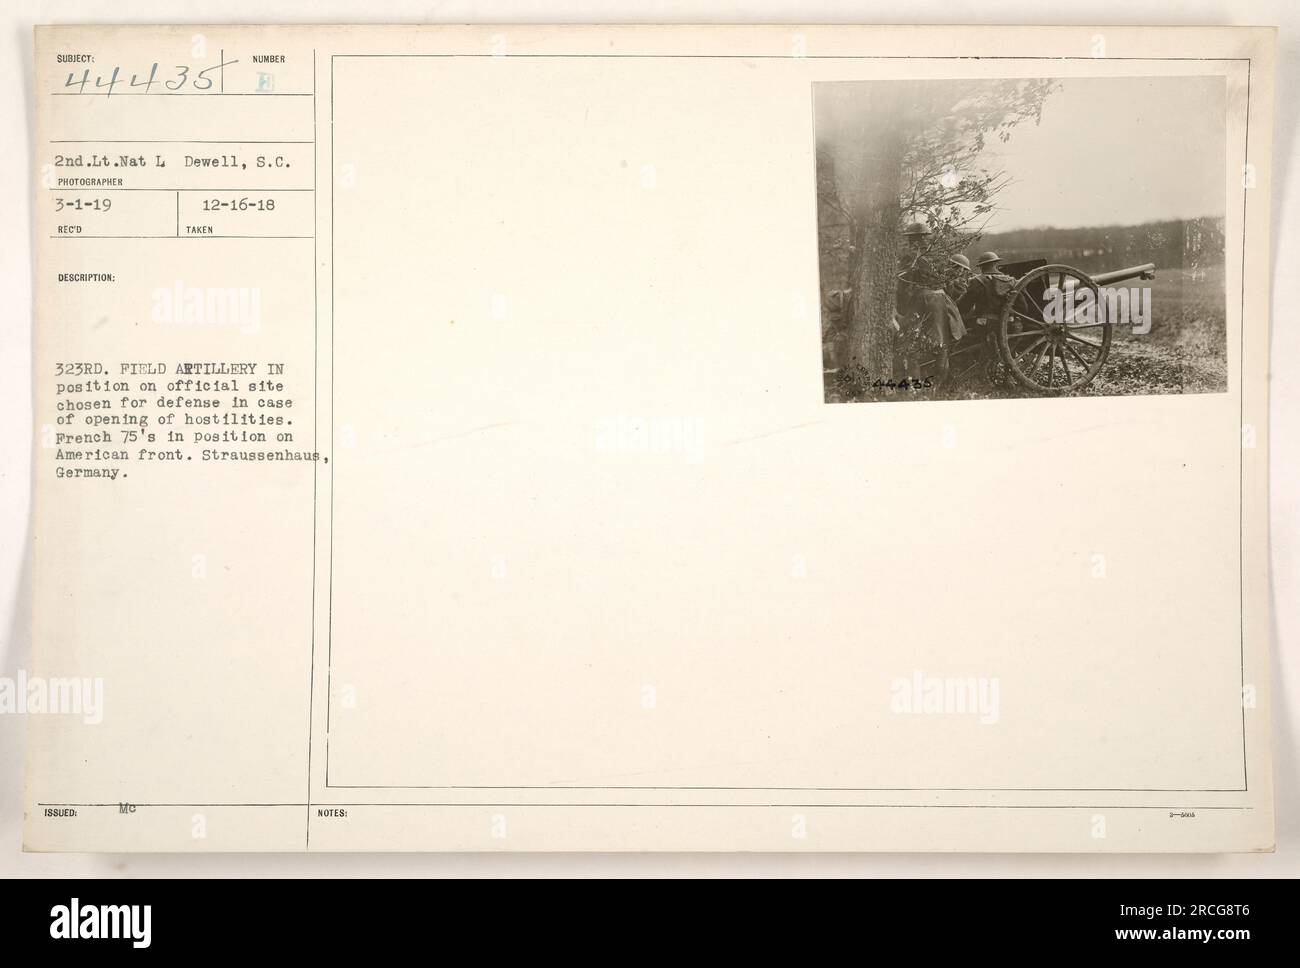 Il 2° tenente Nat L Dewell ha scattato questa foto il 1° marzo 1919. L'immagine mostra la 323a Artiglieria da campo in posizione sul sito ufficiale scelto per la difesa in caso di ostilità. Gli anni '75 francesi si possono vedere sul fronte americano. La foto è stata scattata a Straussenhaus, in Germania. Foto Stock